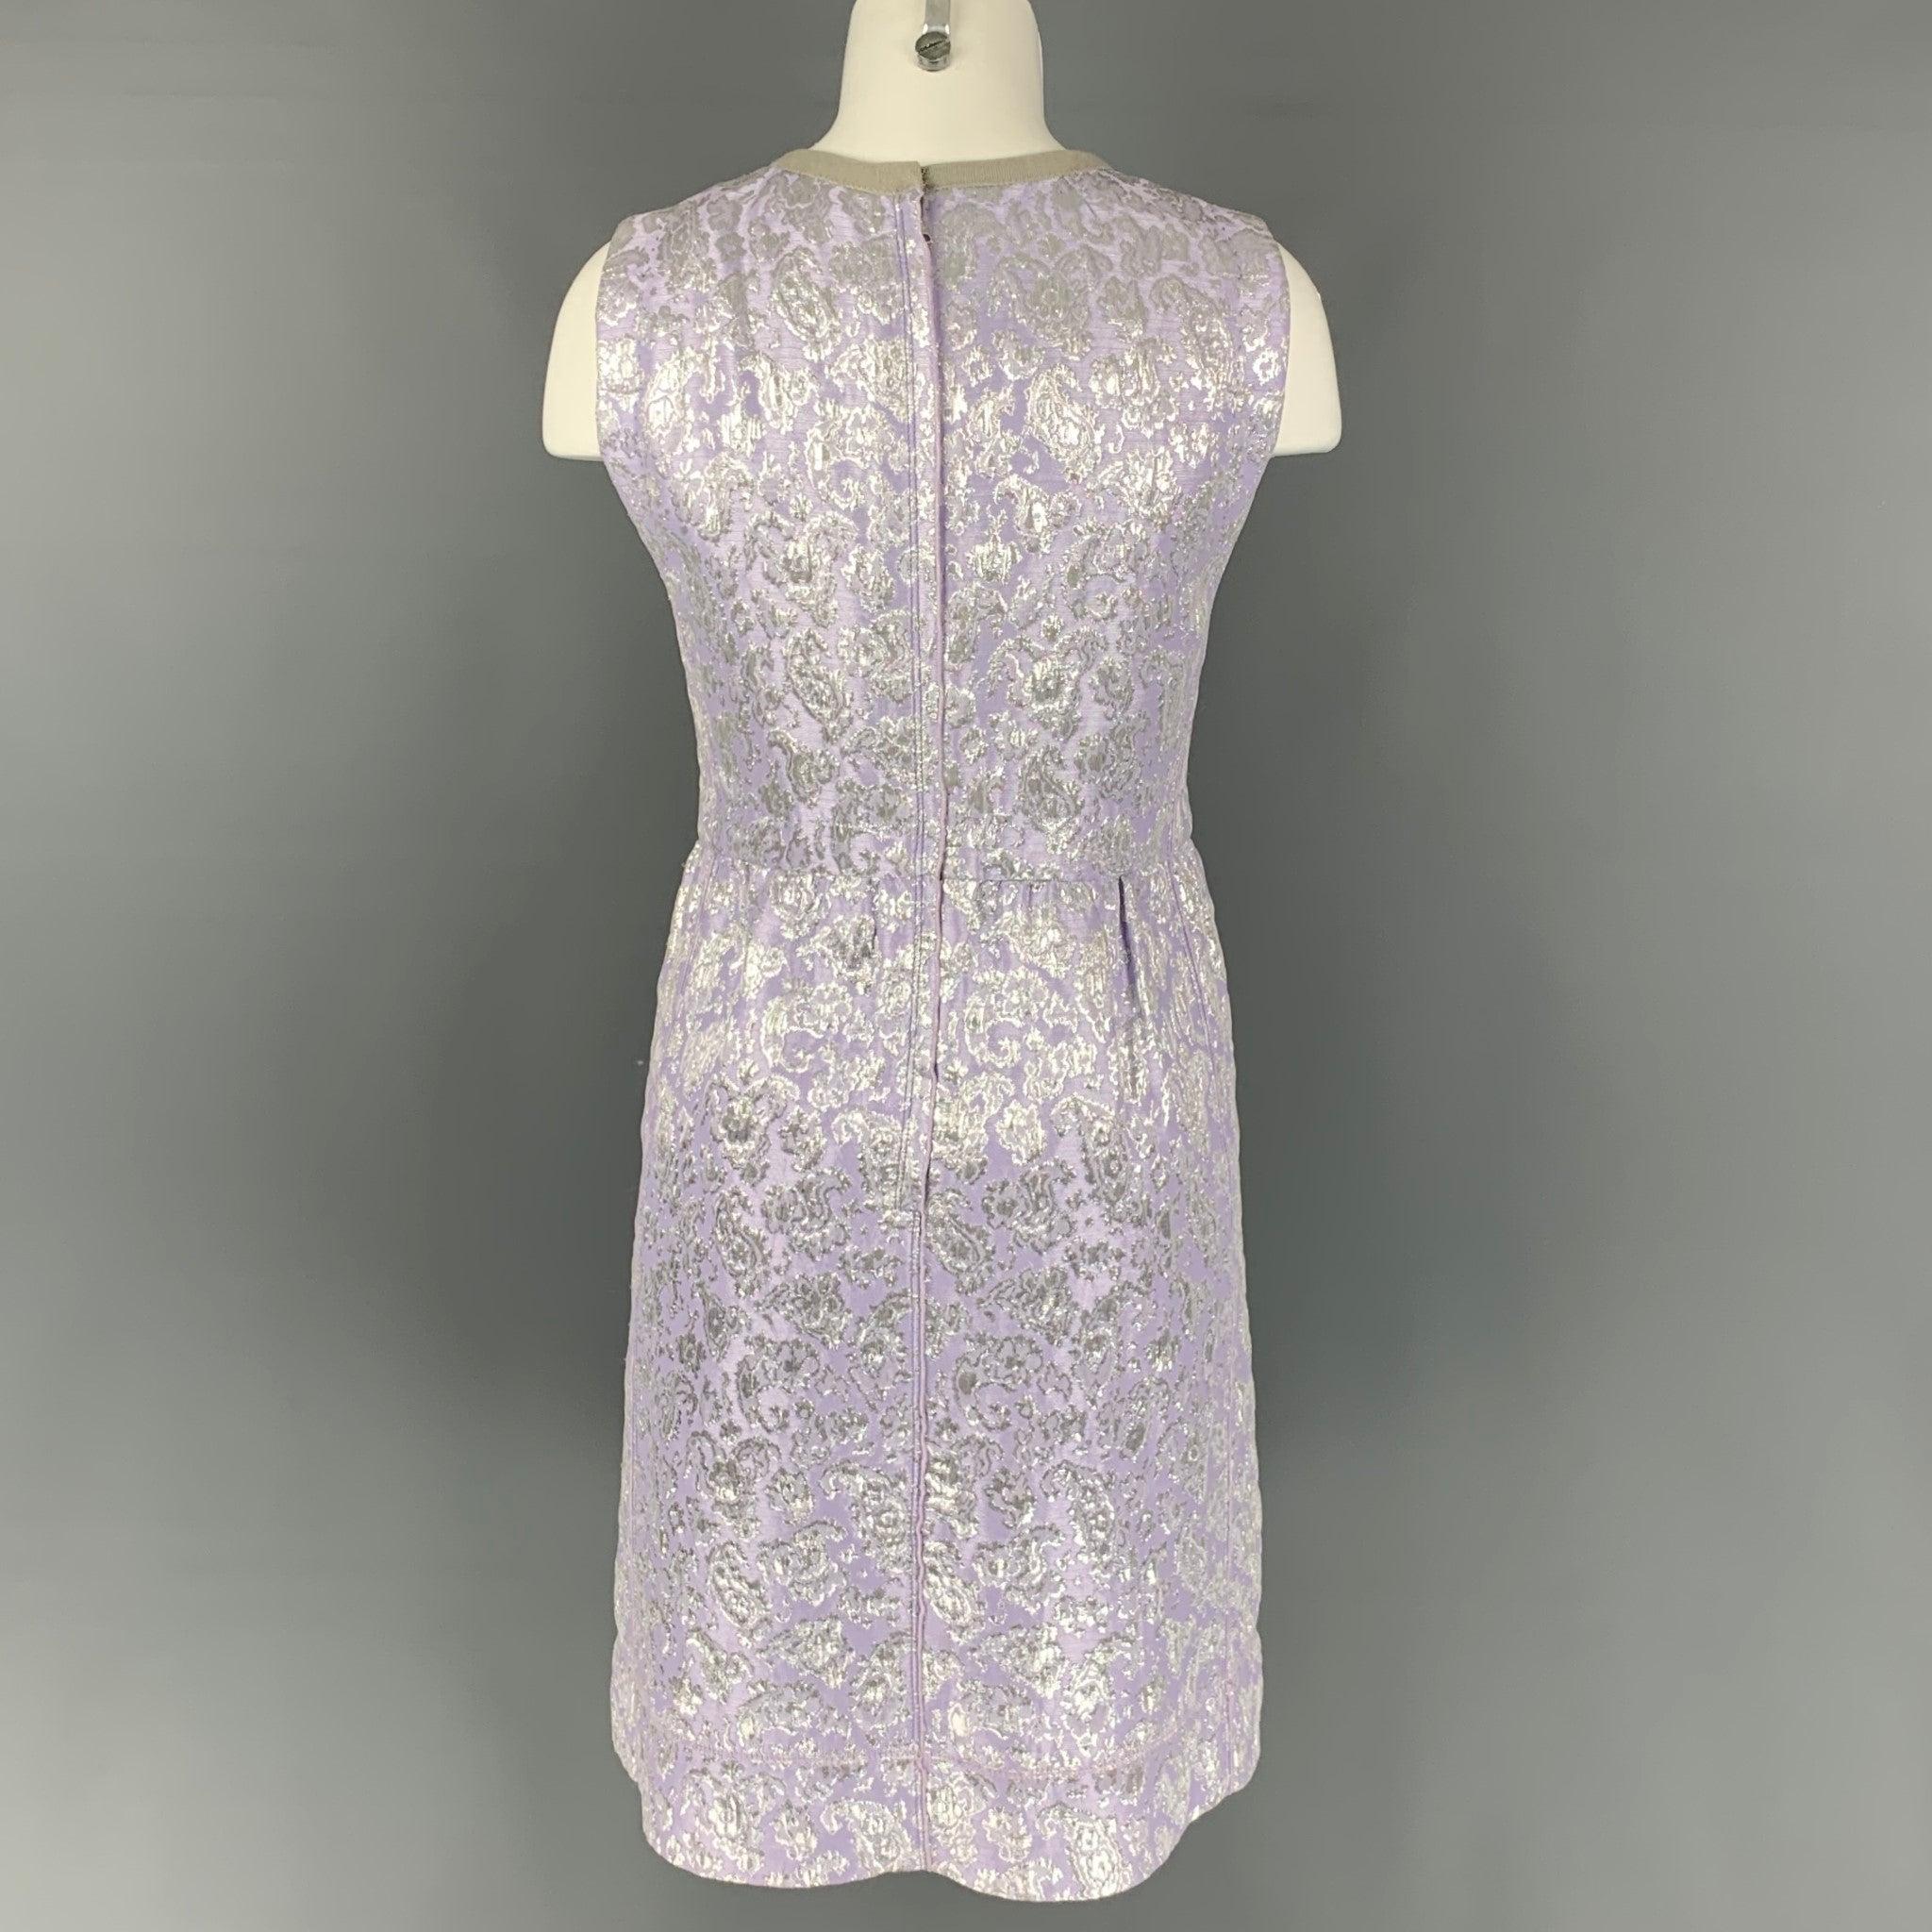 Women's MARC JACOBS Size 6 Lavender & Silver Acetate Blend Jacquard Sheath Dress For Sale